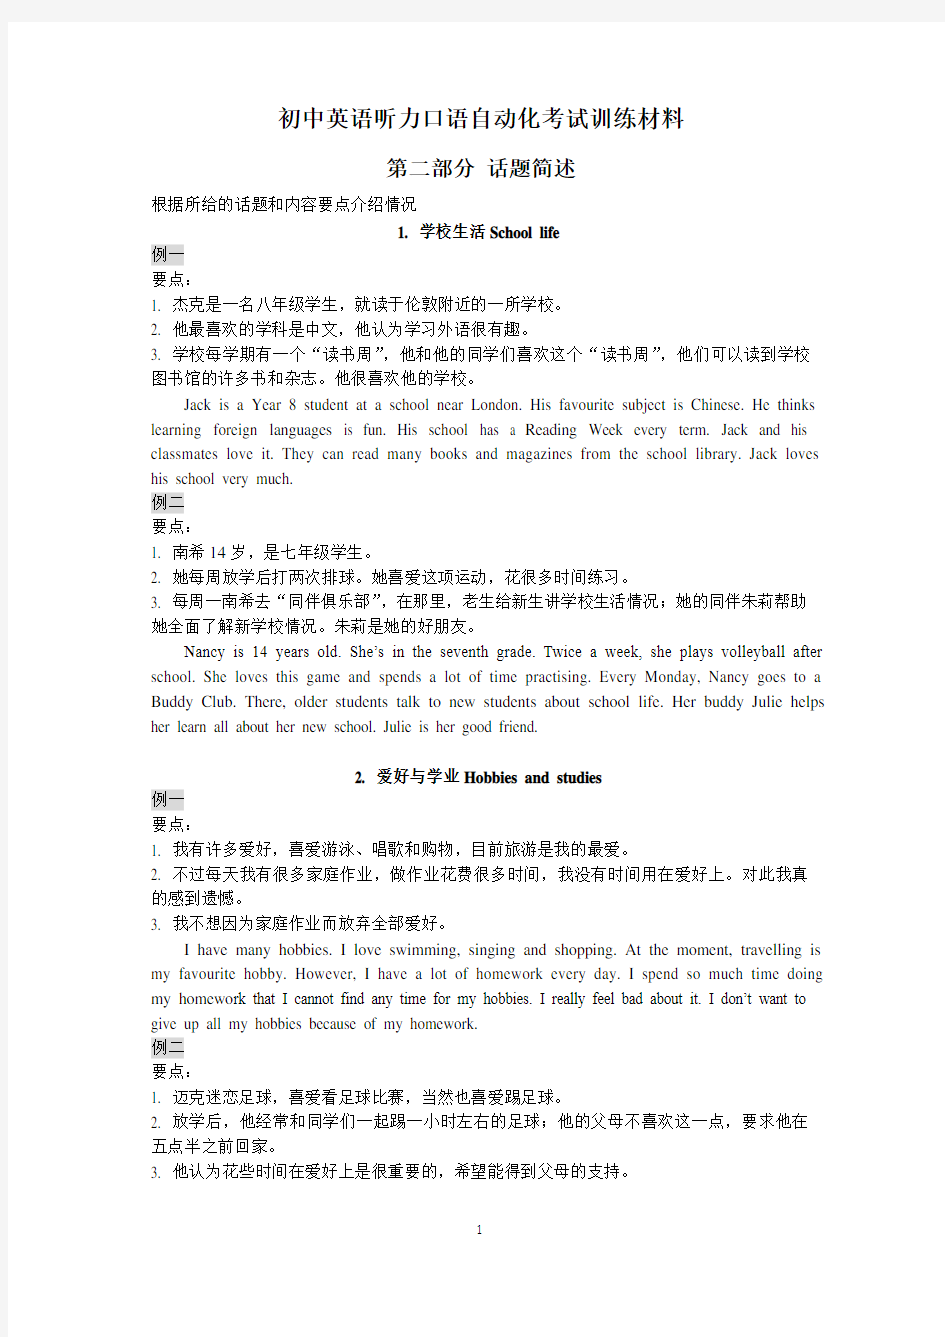 2020年江苏省人机对话考试口语训练材料话题简述(含例文)